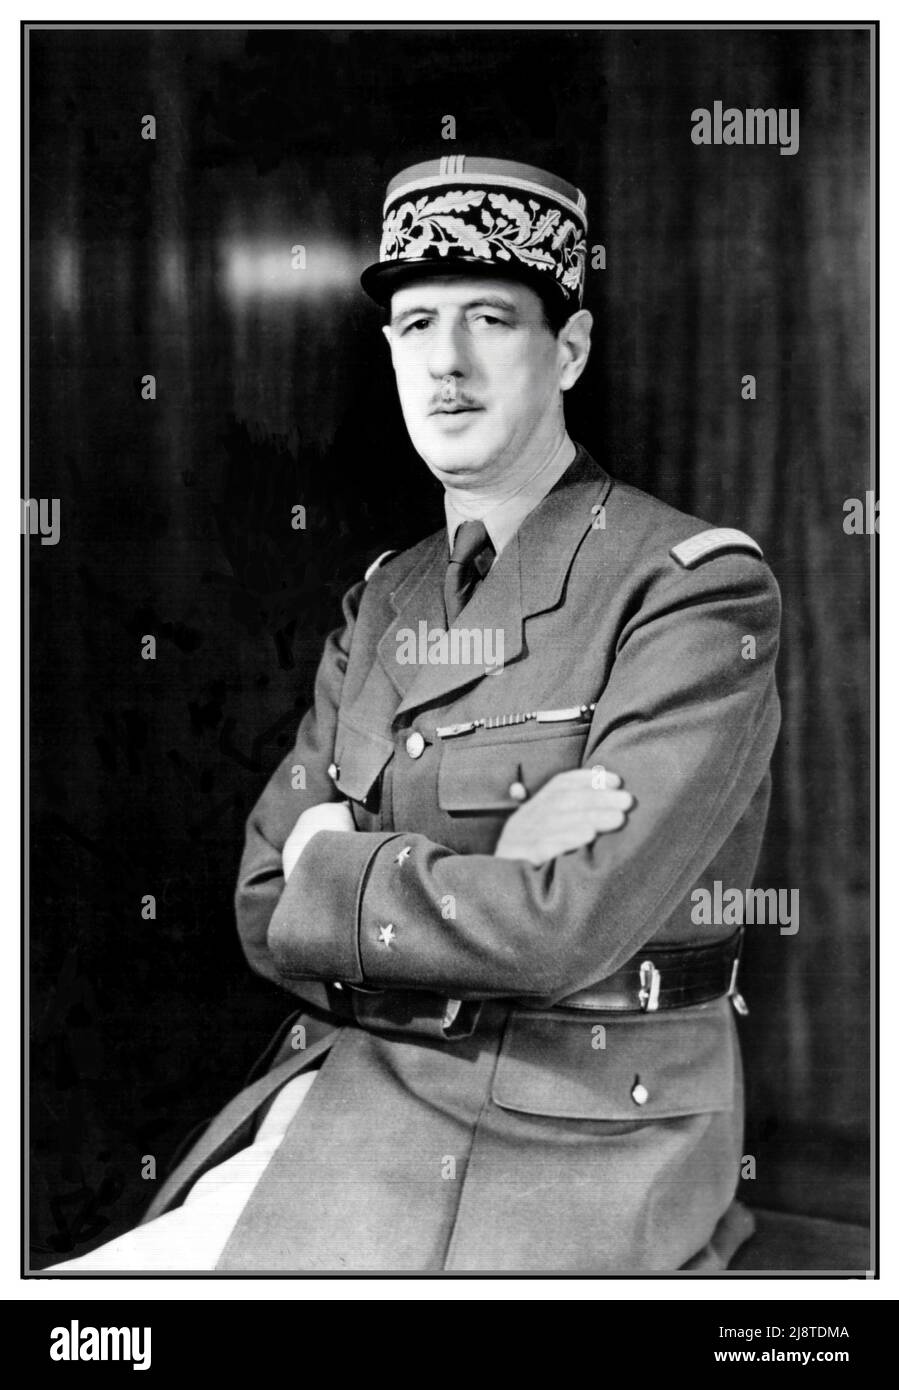 2. Weltkrieg französischer General Charles de Gaulle formelles Porträt in Militäruniform und Mütze. Ein Foto-Porträt des Generals Charles de Gaulle von den Freien Französischen Streitkräften und ersten Präsidenten der Fünften Republik, der von 1959 bis 1969 diente. Datum ca. 1942 Zweiten Weltkrieg Stockfoto